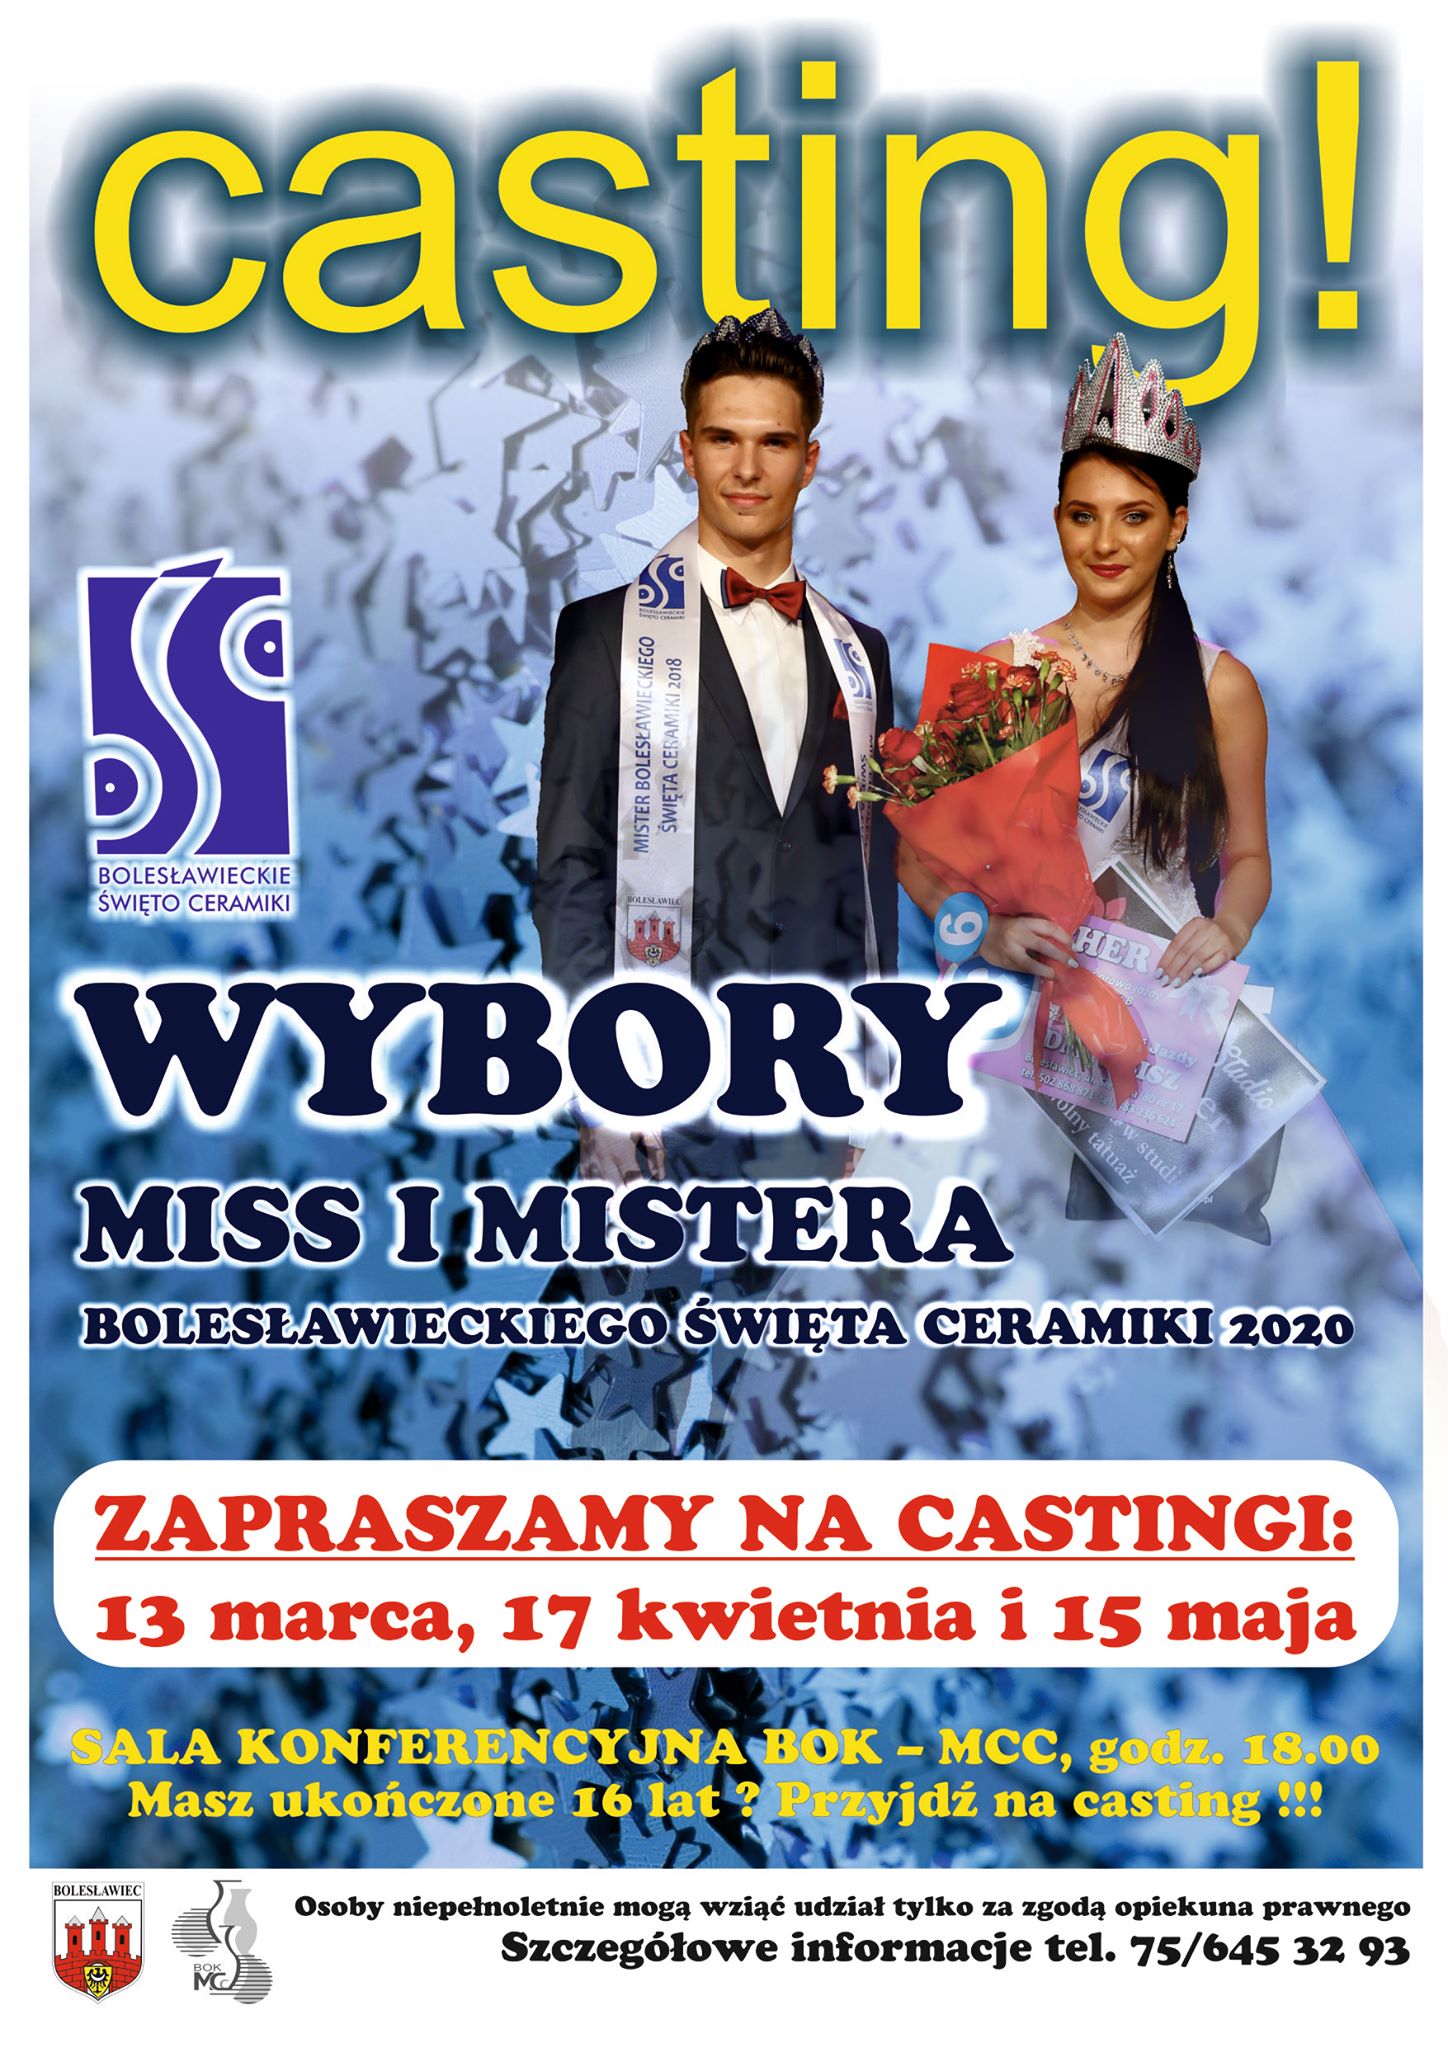 Wybory Miss i Mistera Bolesławieckiego Święta Ceramiki 2020